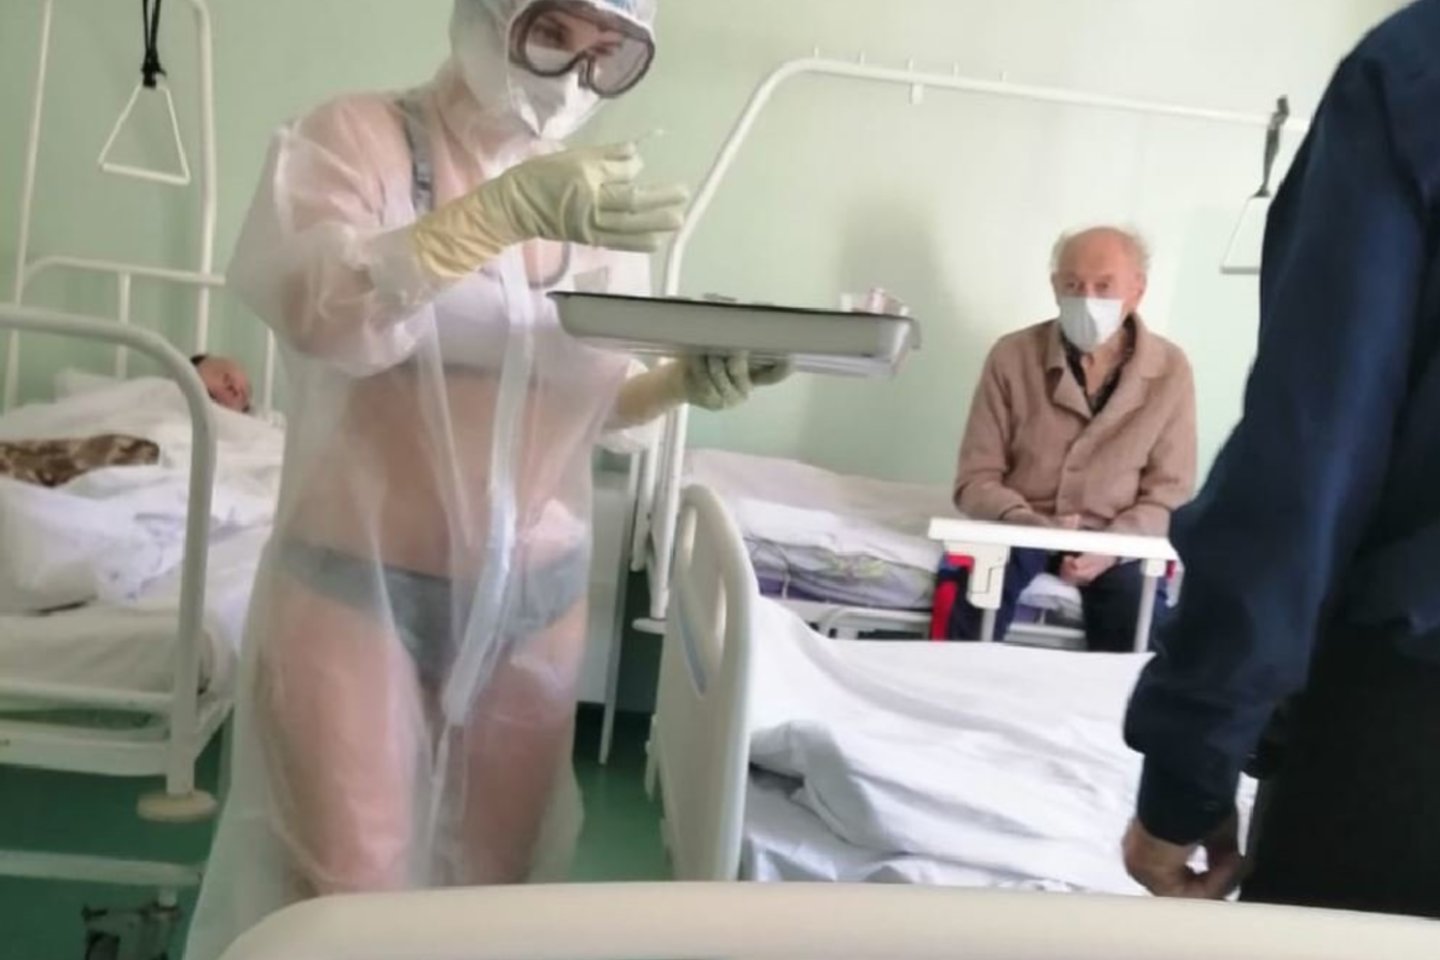 Medicinos seselė iš vienos Tulos ligoninių, nustebino savo apranga. Vienoje iš Rusijos ligoninių besidarbuojanti mergina sulaukė nuobaudų iš ligoninės personalo, nes po apsauginiais rūbais nuo koronaviruso dėvėjo tik apatinius.<br>soc.tinklo „Twitter“ nuotr.